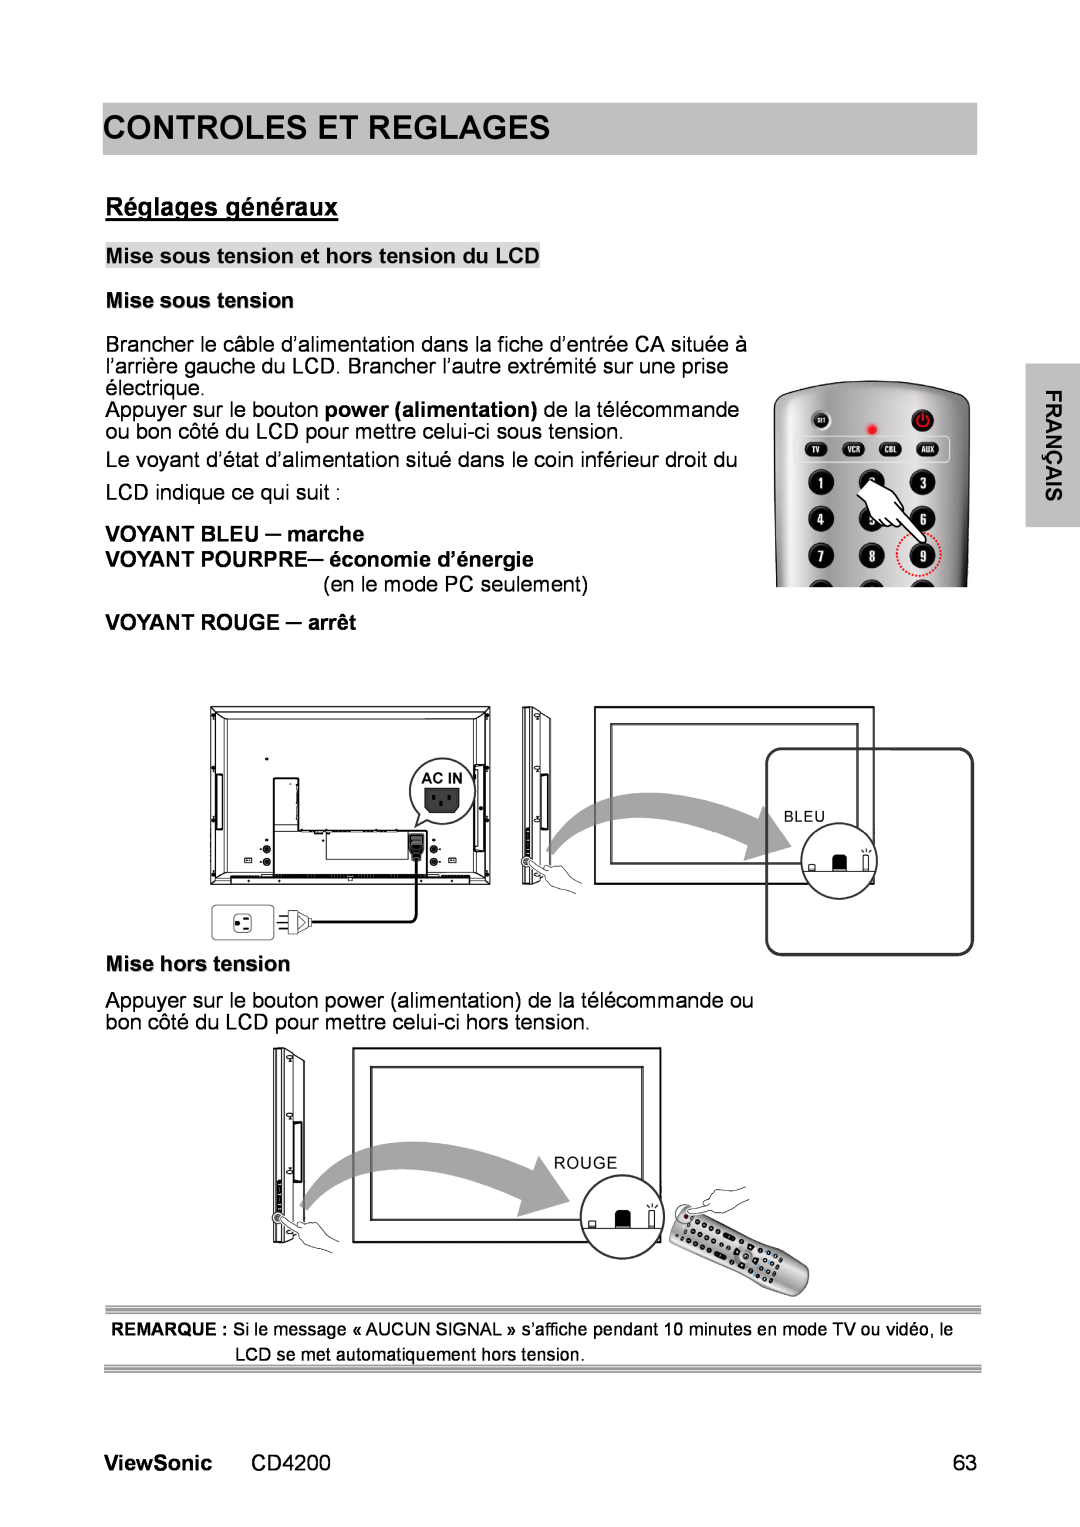 ViewSonic CD4200 Controles Et Reglages, Réglages généraux, Mise sous tension et hors tension du LCD Mise sous tension 